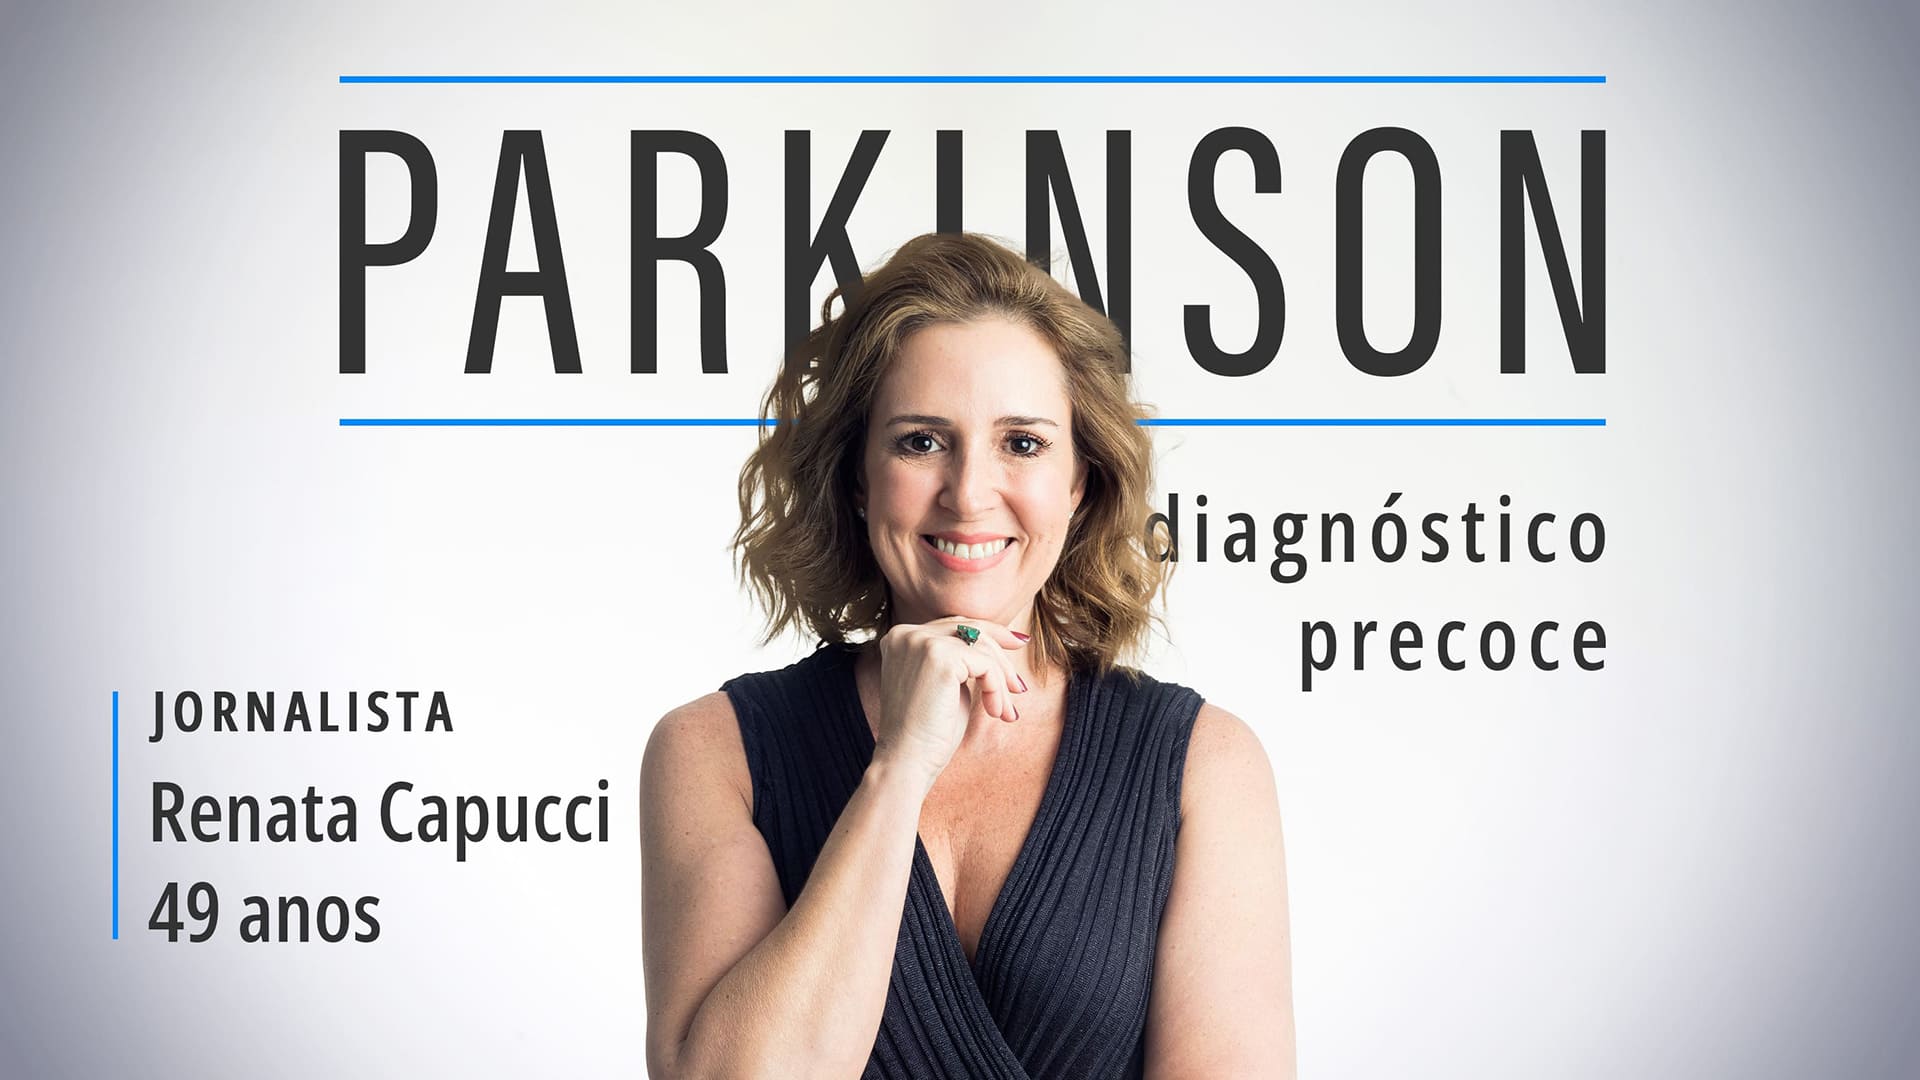 Foto da jornalista Renata Capucci, mulher branca com cabelos loiros na altura dos ombros, reveleu ter a doença de Parkinson e o diagnóstico precoce.